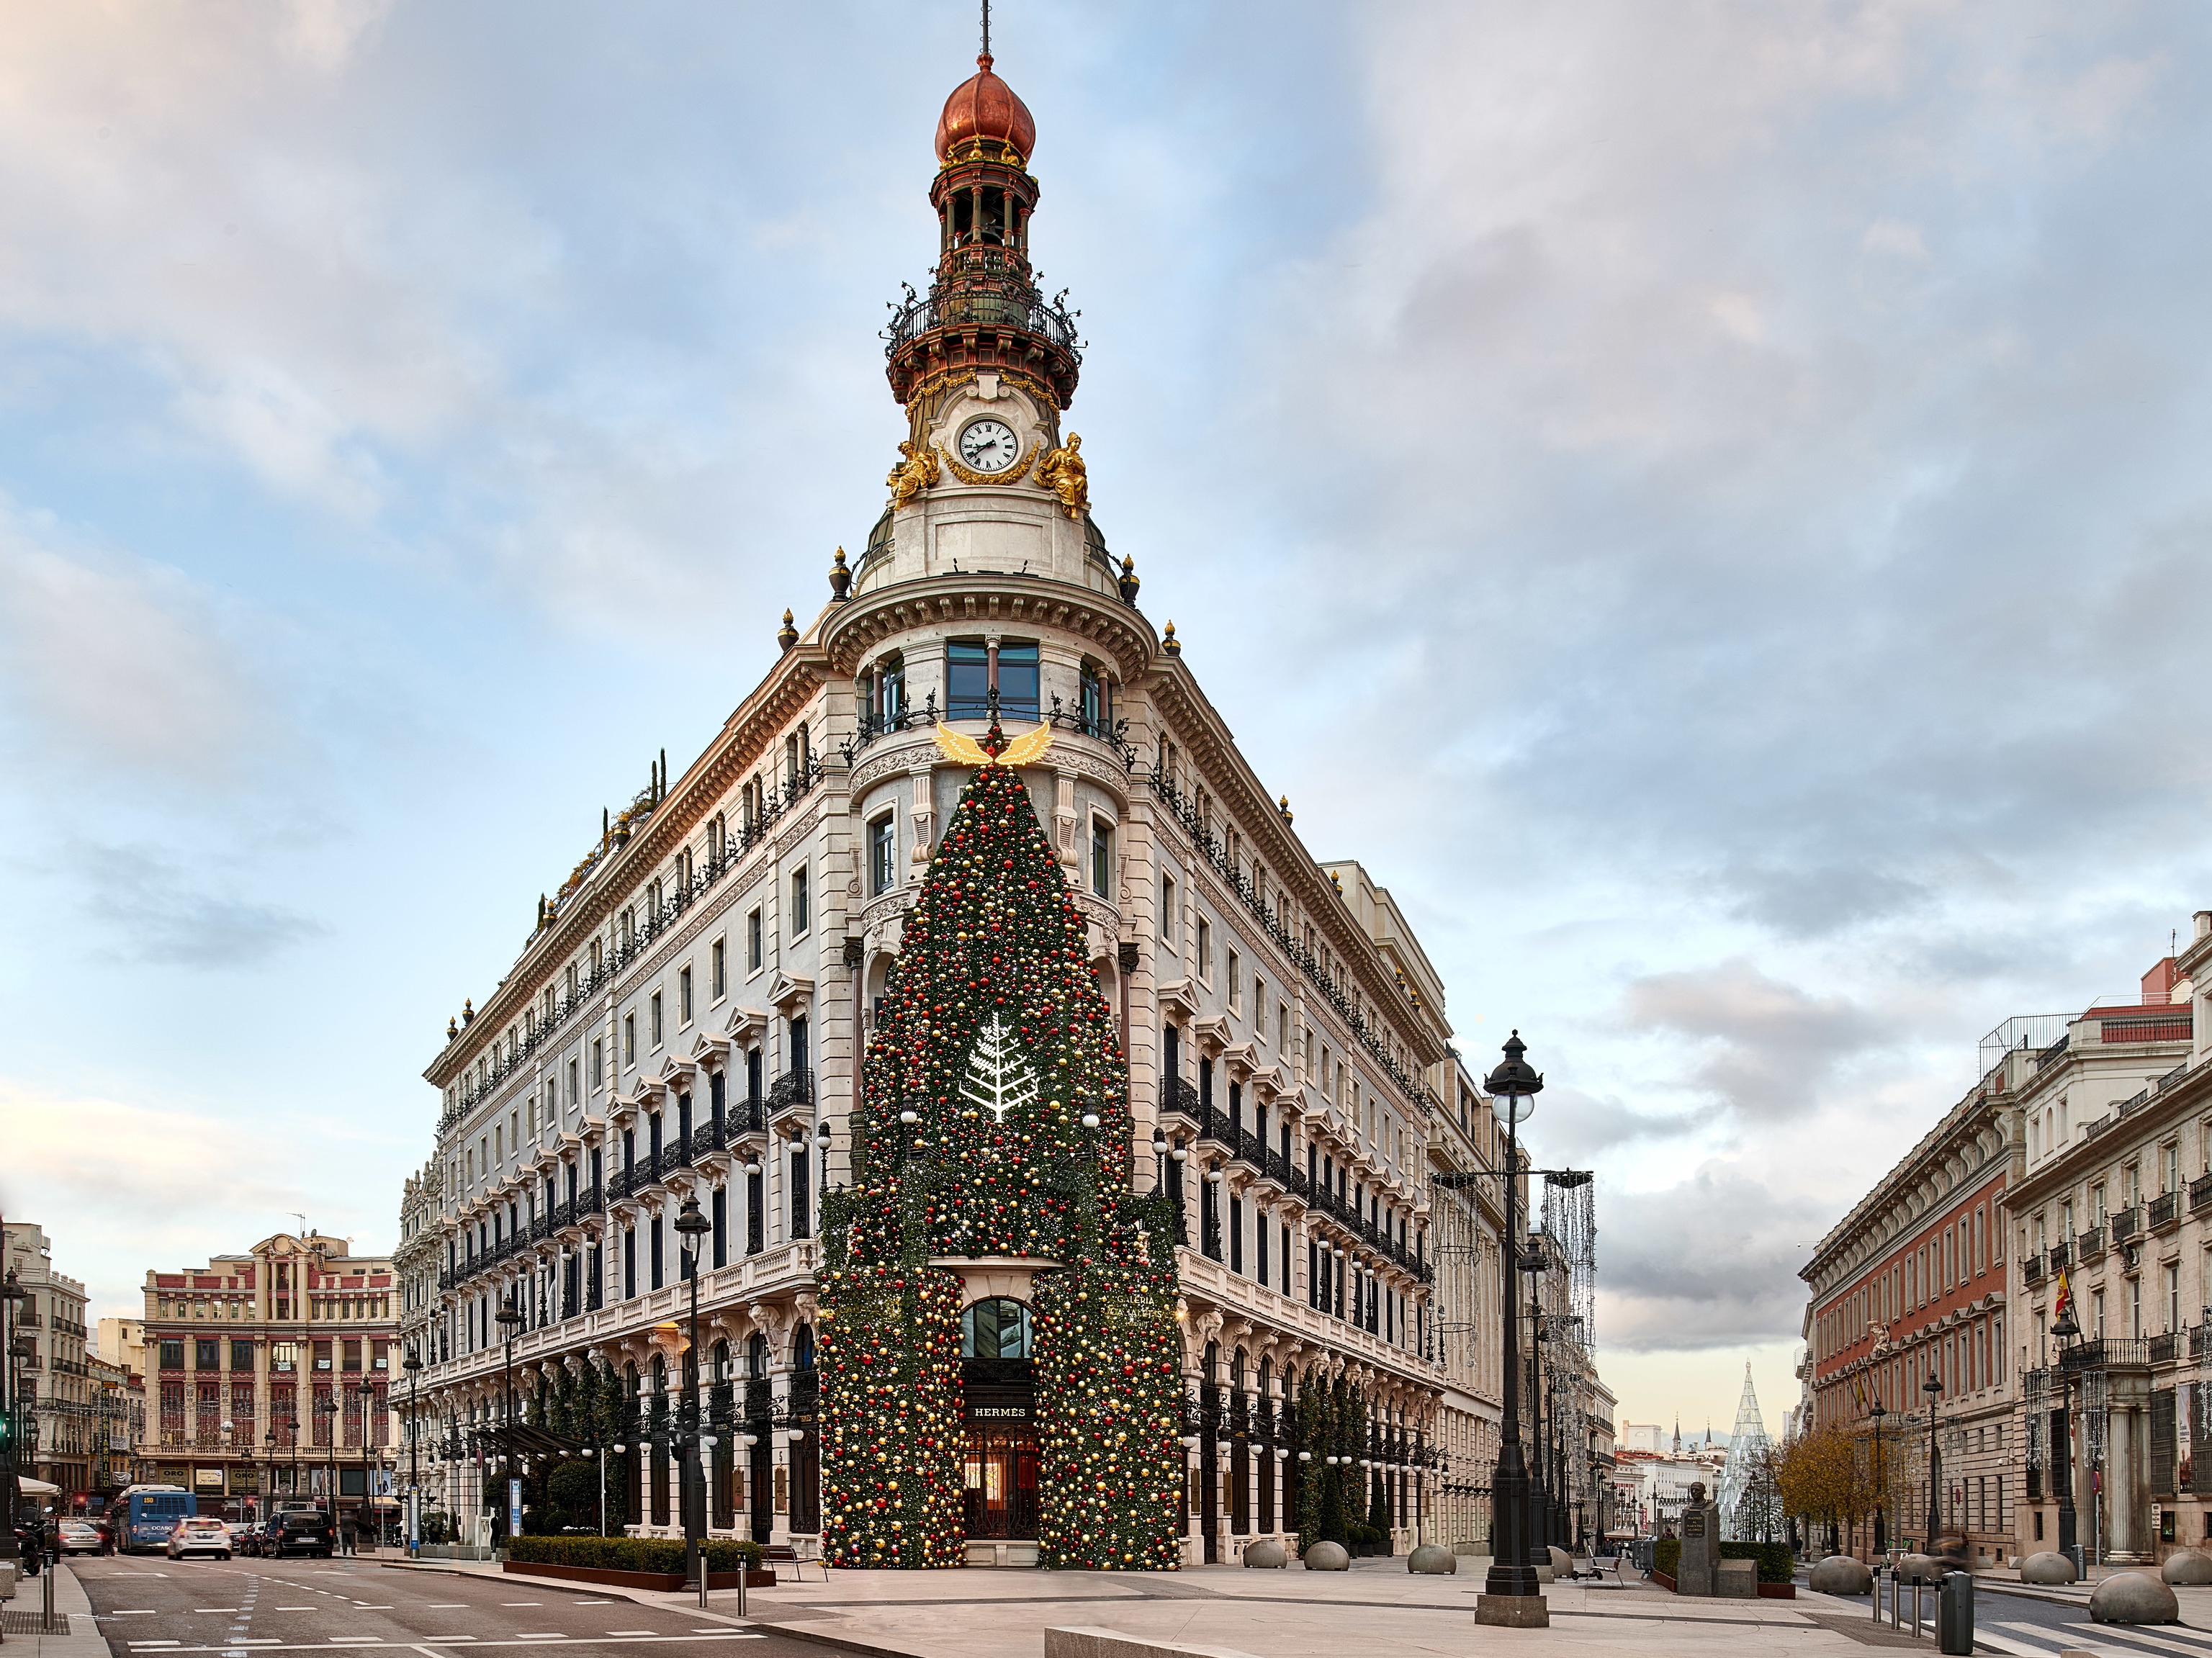 La fachada del Hotel Four Seasons, iluminada en Navidad.